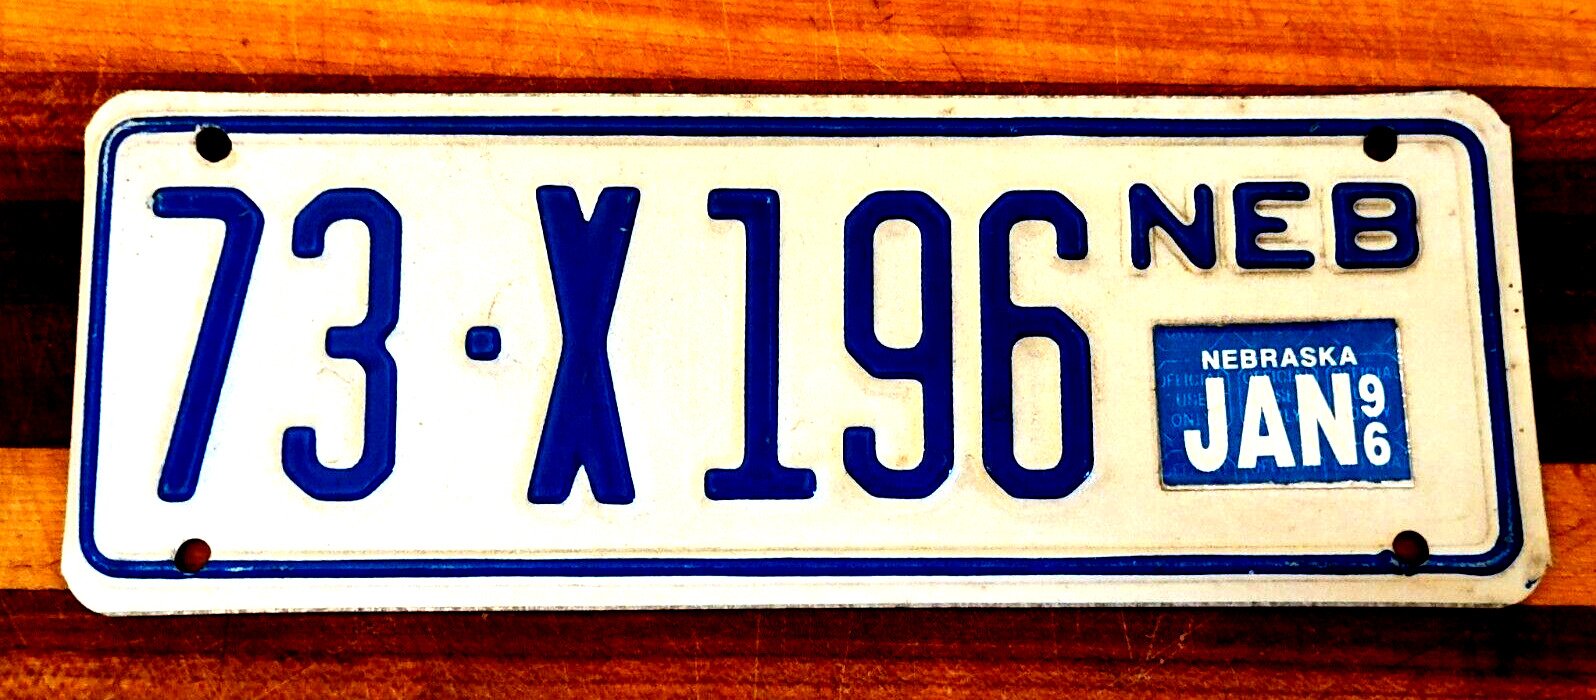 1996 Nebraska Trailer Blue on White Metal Expired License Plate Tag 73-X196